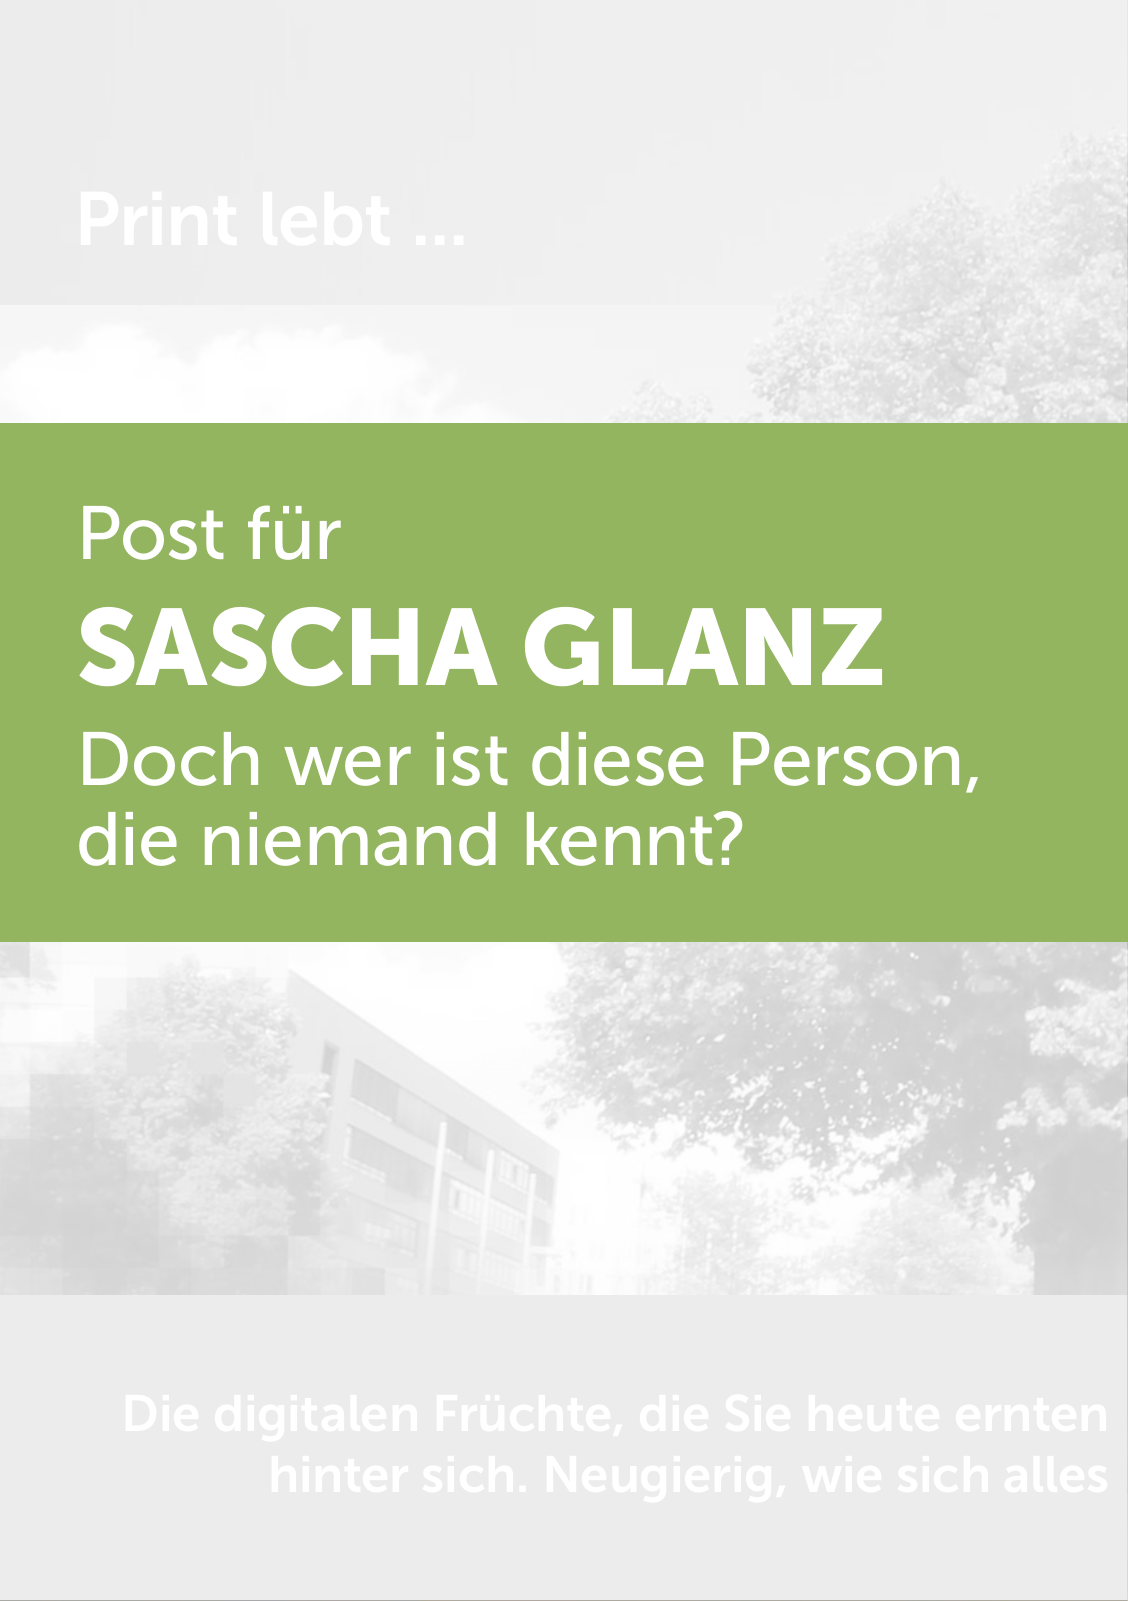 Vorschau Post für Sascha Glanz Seite 2